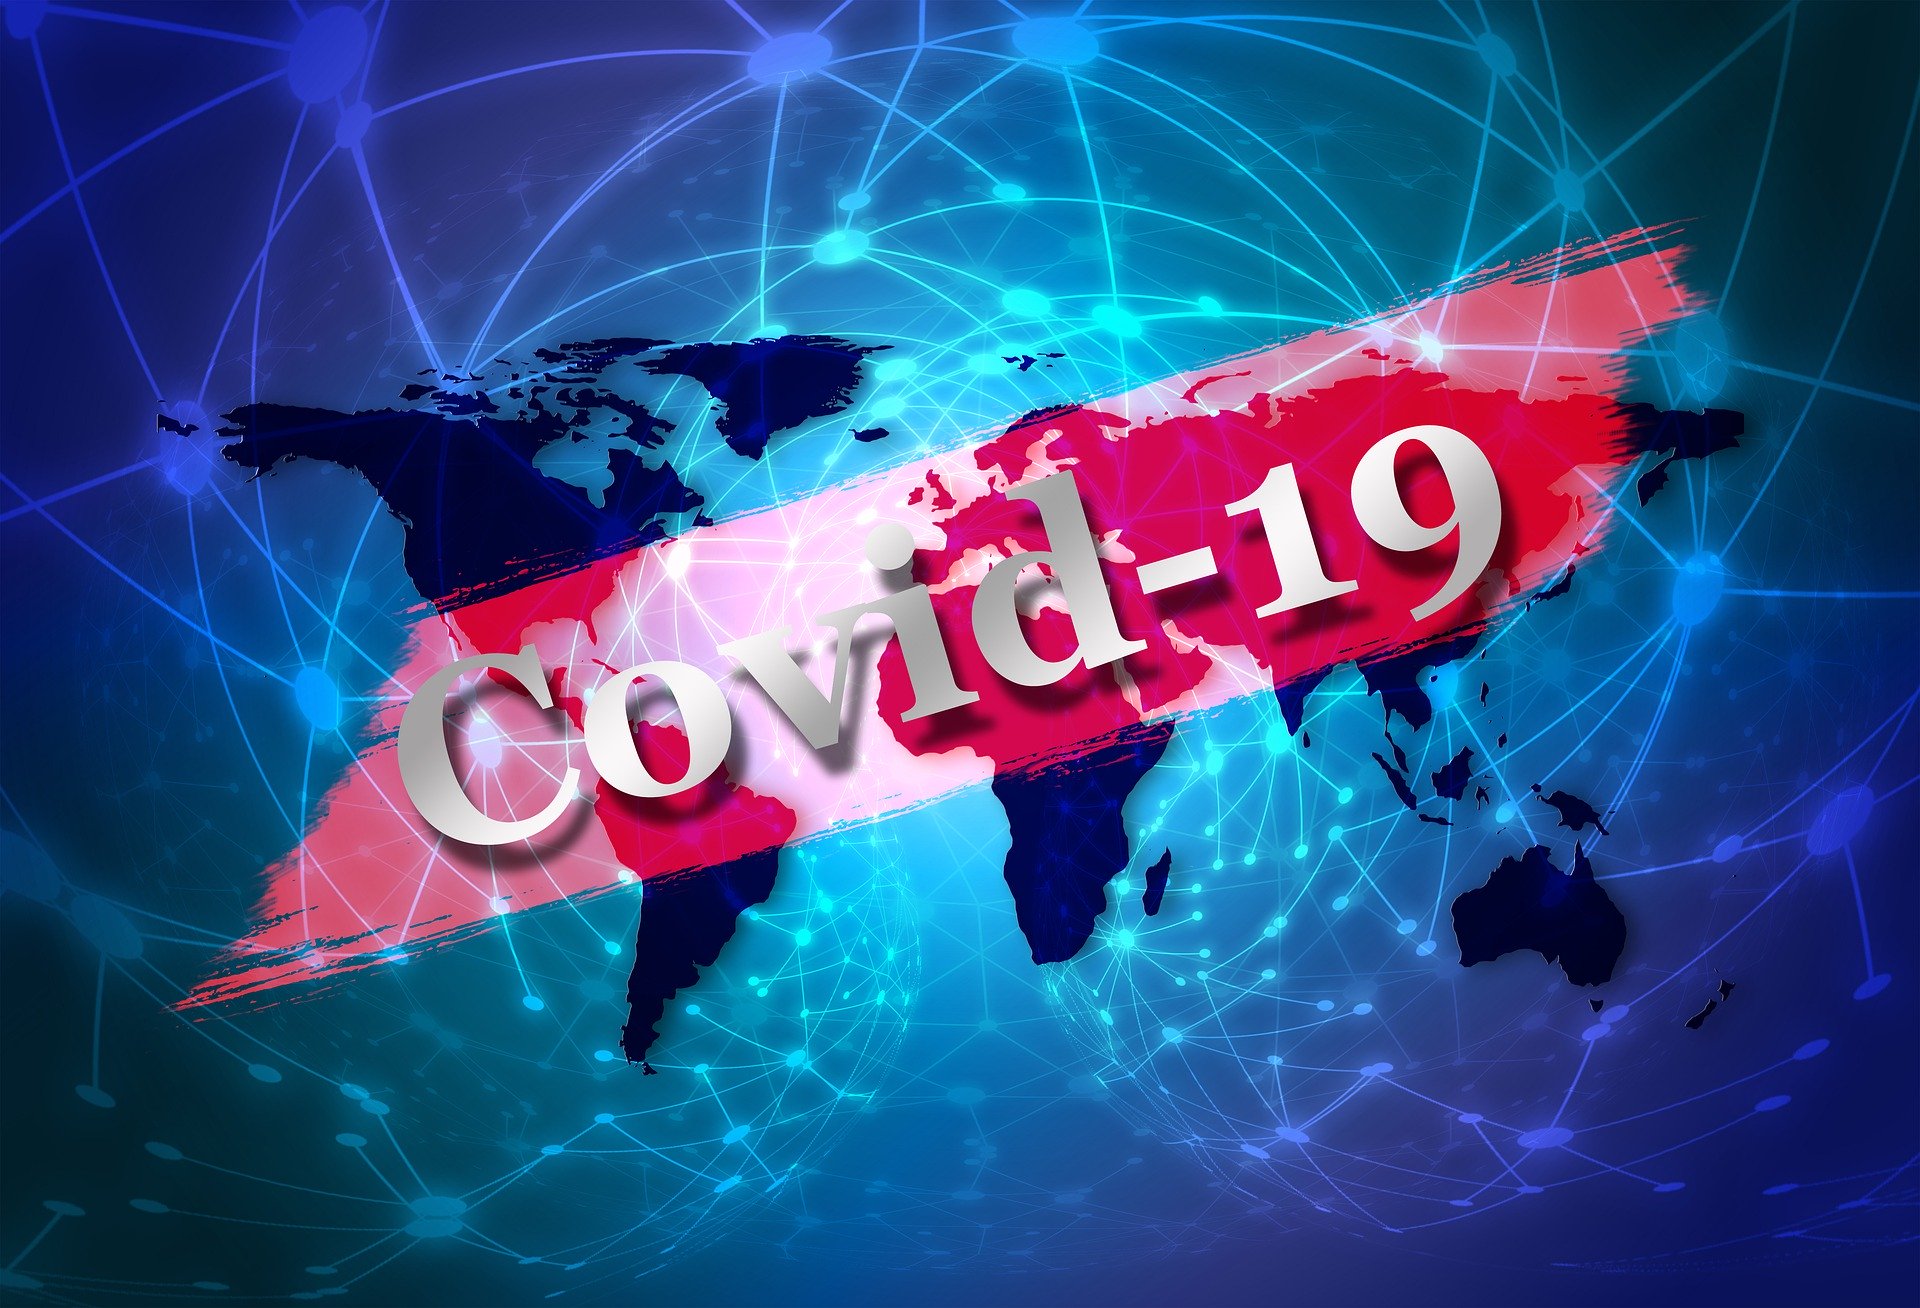 301 са новите случаи на COVID-19 у нас за последното